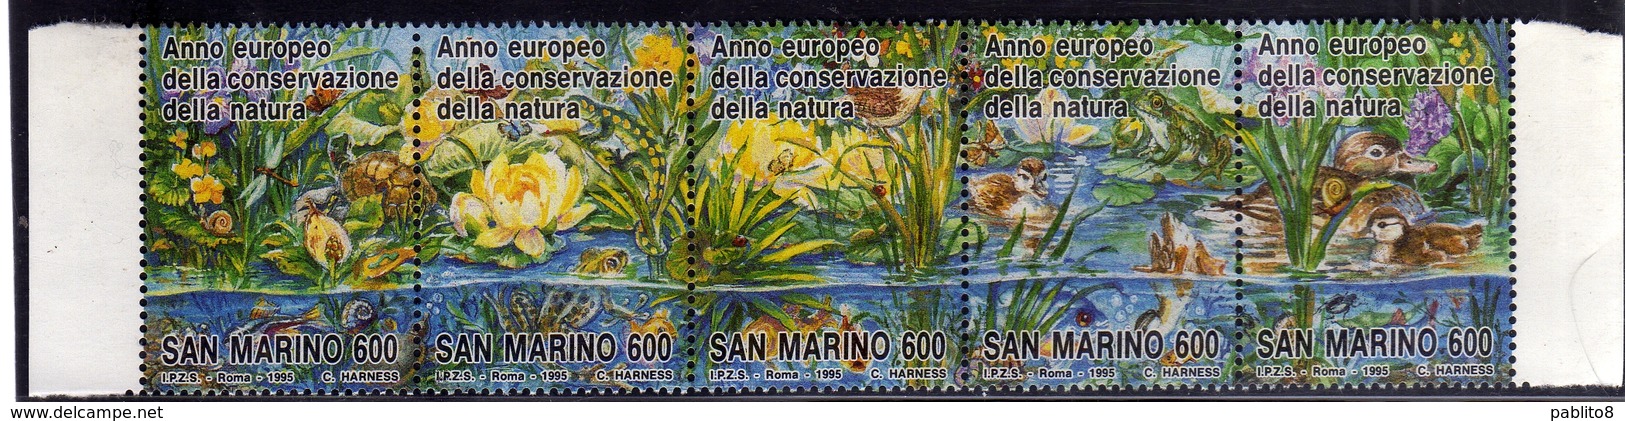 REPUBBLICA DI SAN MARINO 1995 CONSERVAZIONE DELLA NATURA NATURE CONSERVATION SERIE COMPLETA COMPLETE SET MNH - Unused Stamps